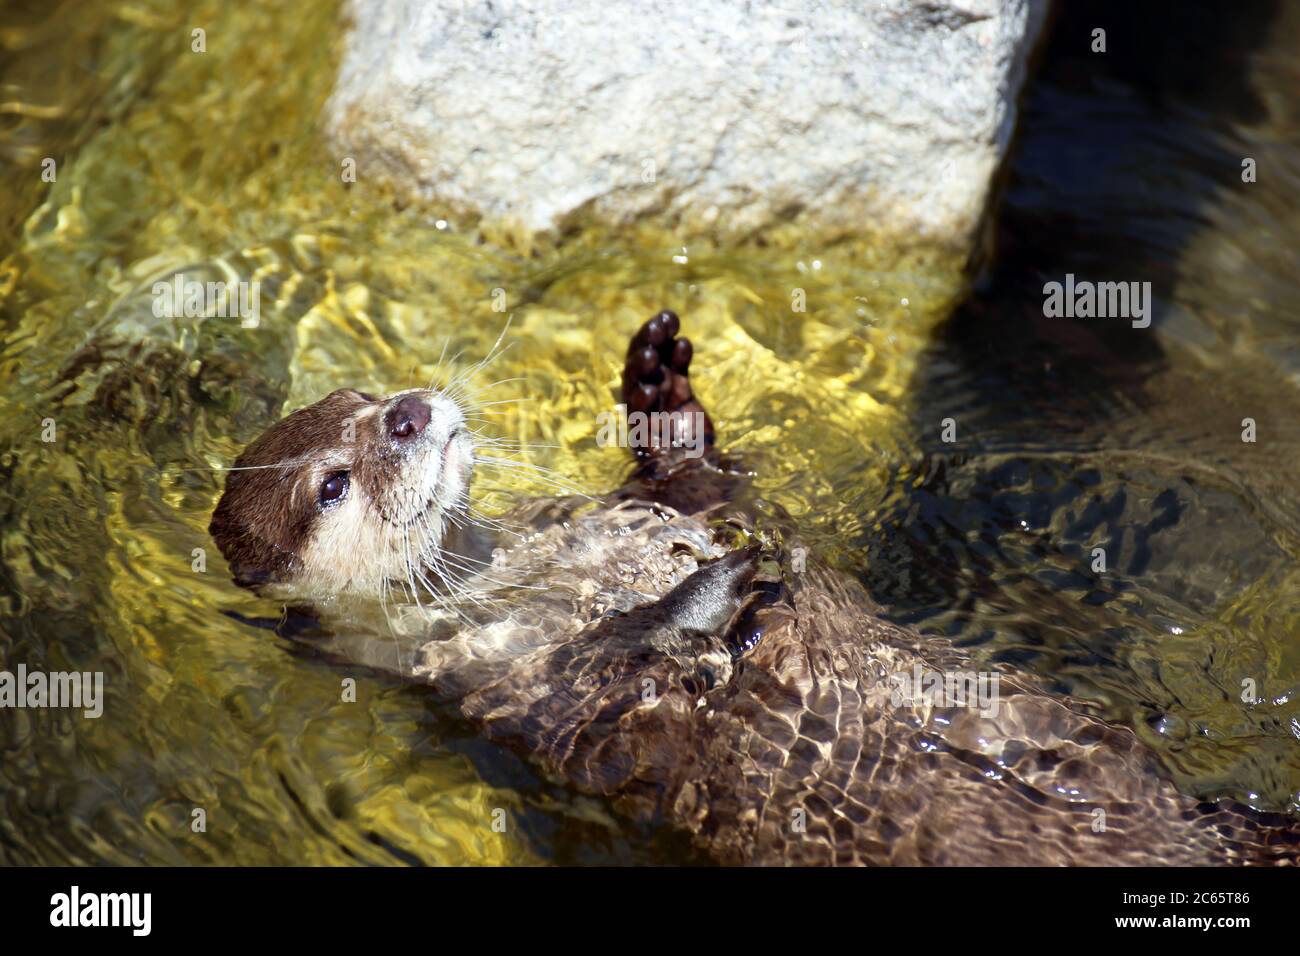 Nahaufnahme von einem Otter (Lutrinae) im Wasser Stock Photo